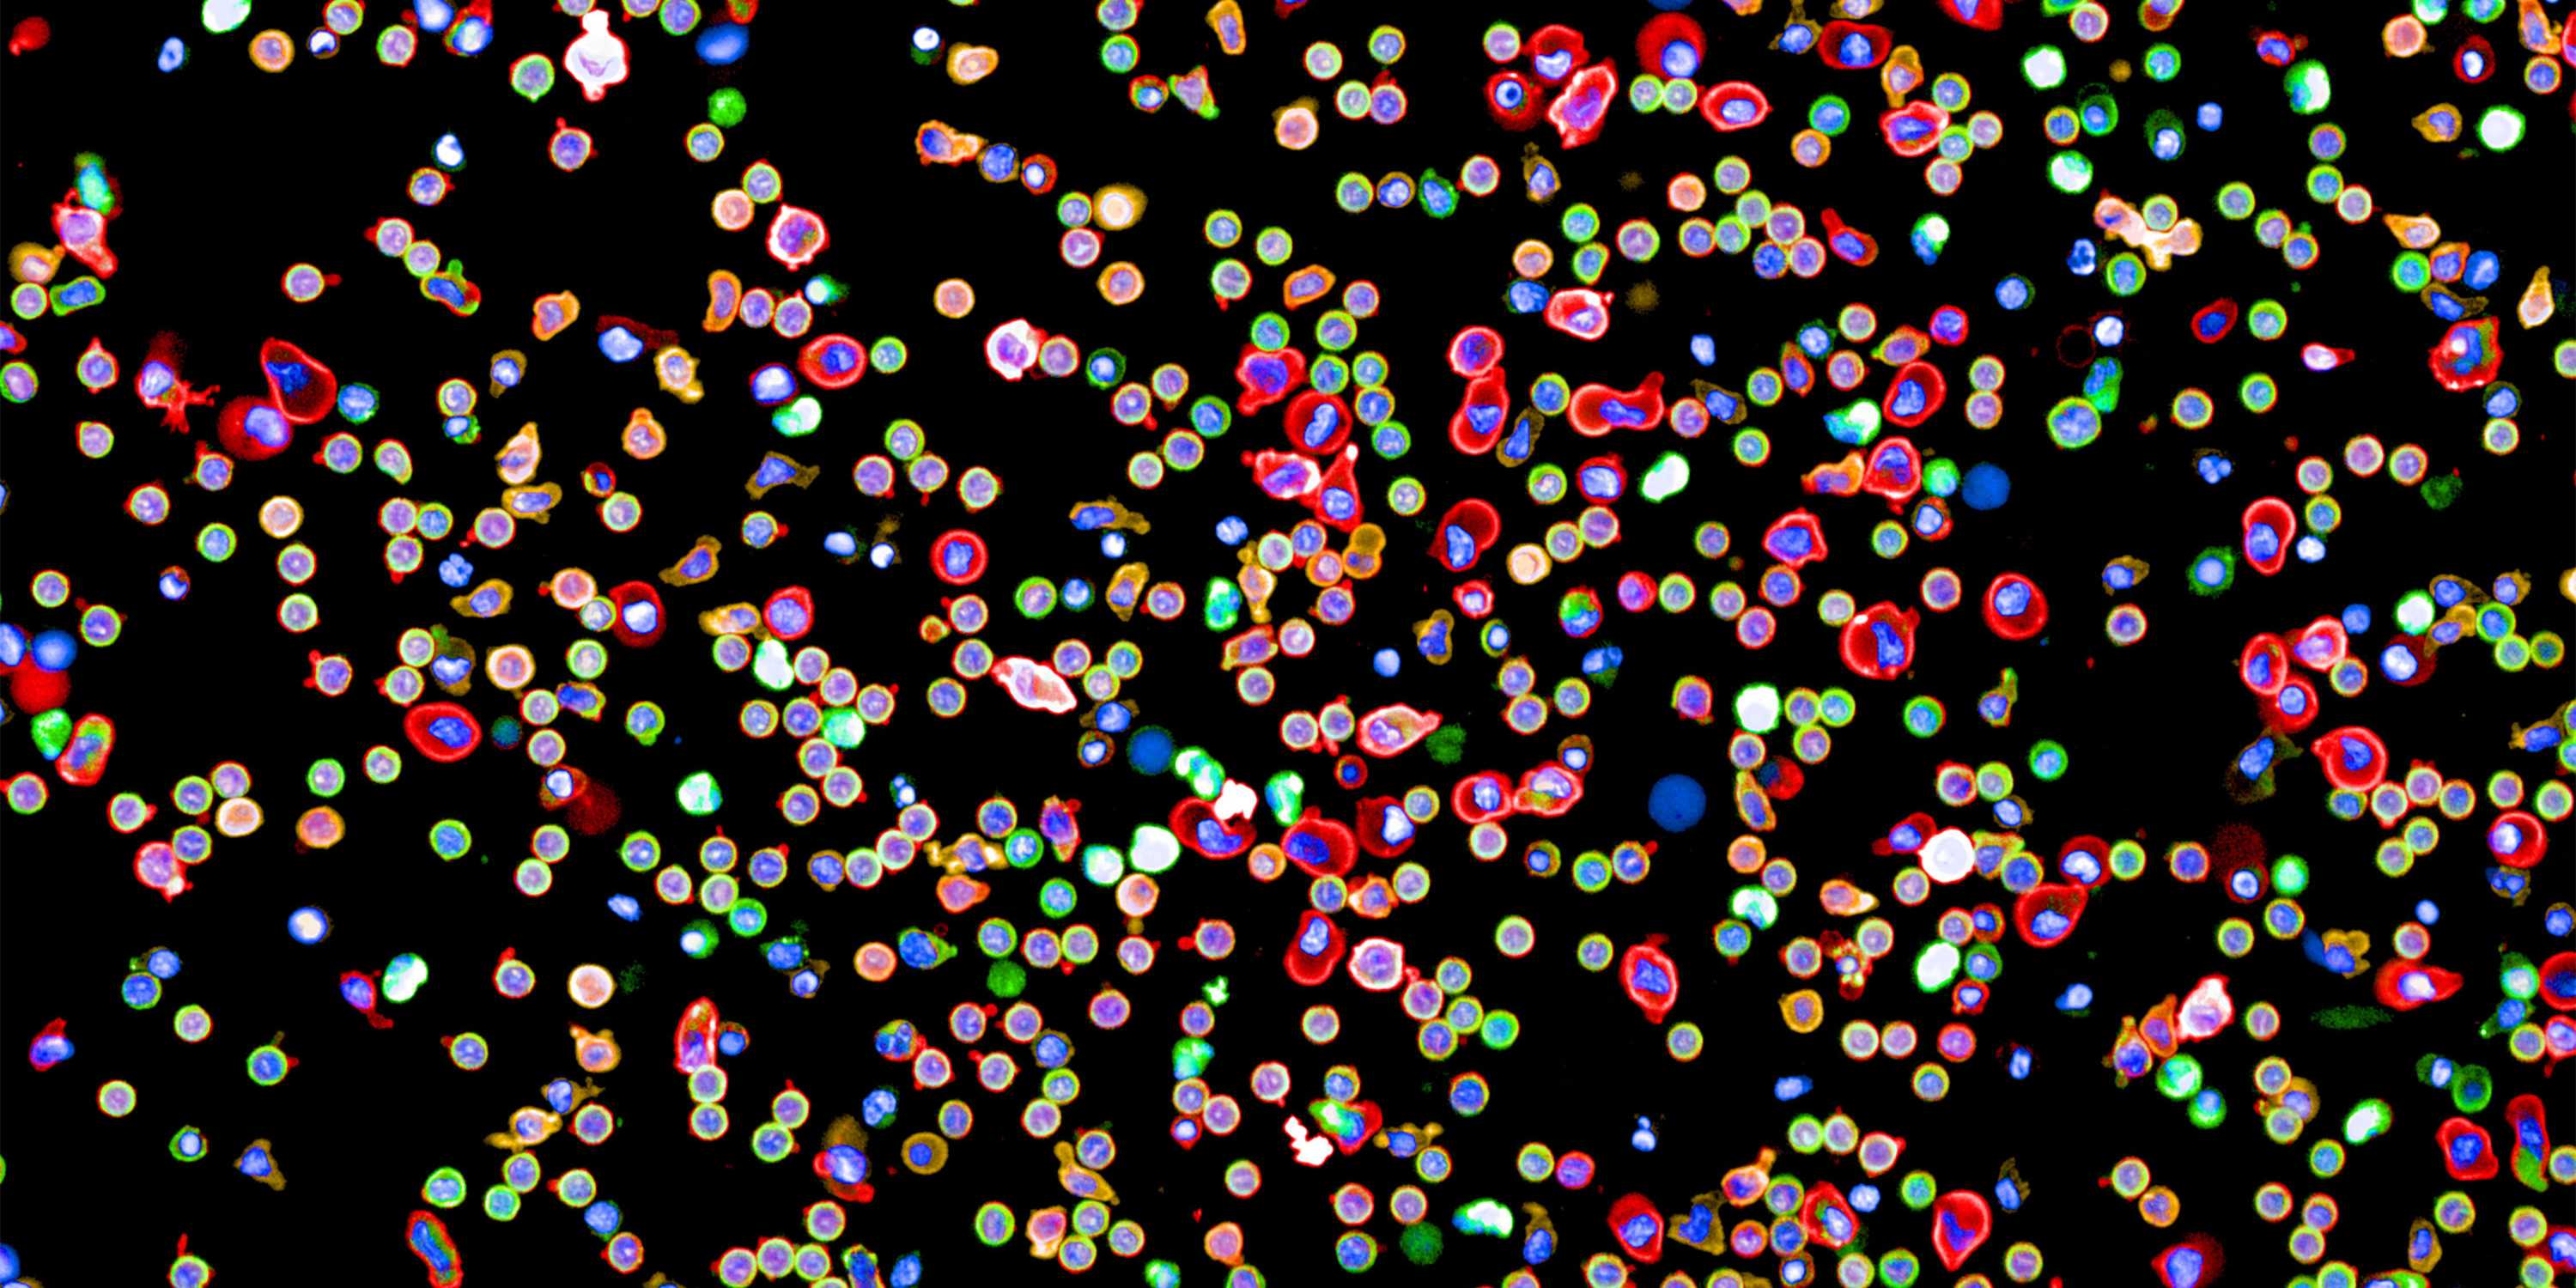 Angefärbte Immunzellen aus dem Blut eines Menschen